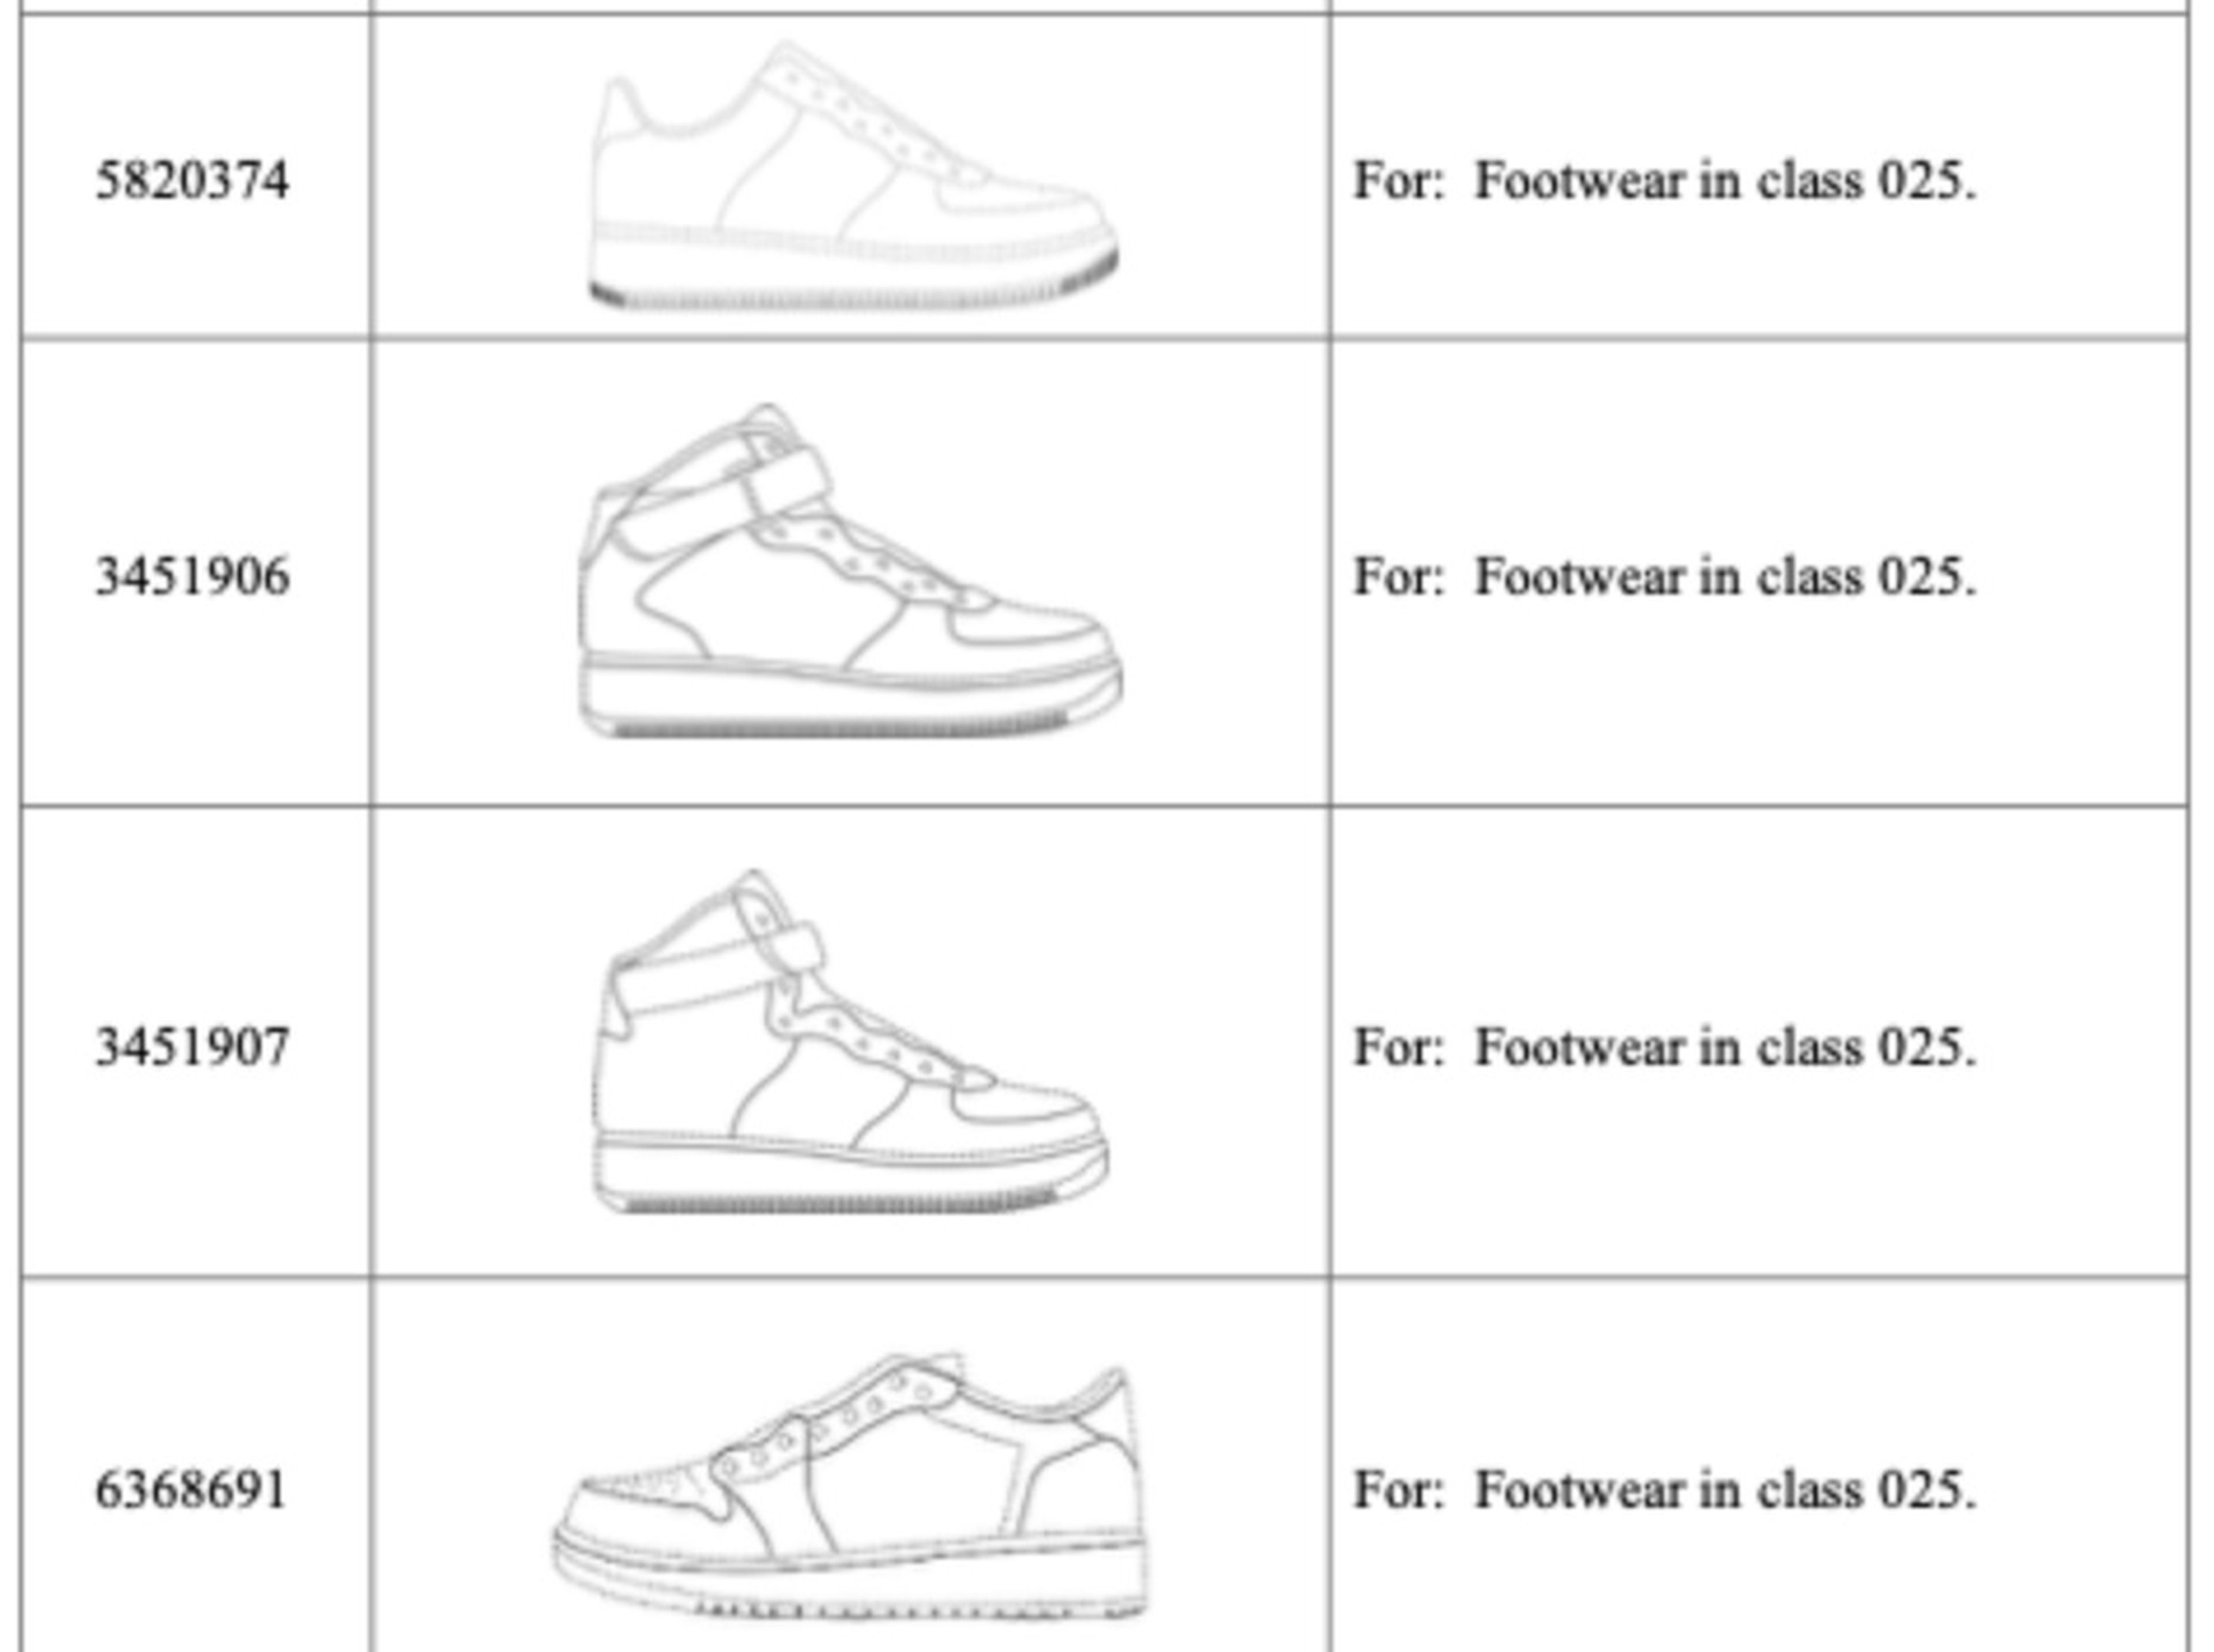 Nike ha demandado a numerosas empresas que, según alega, venden productos falsificados que infringen sus patentes.